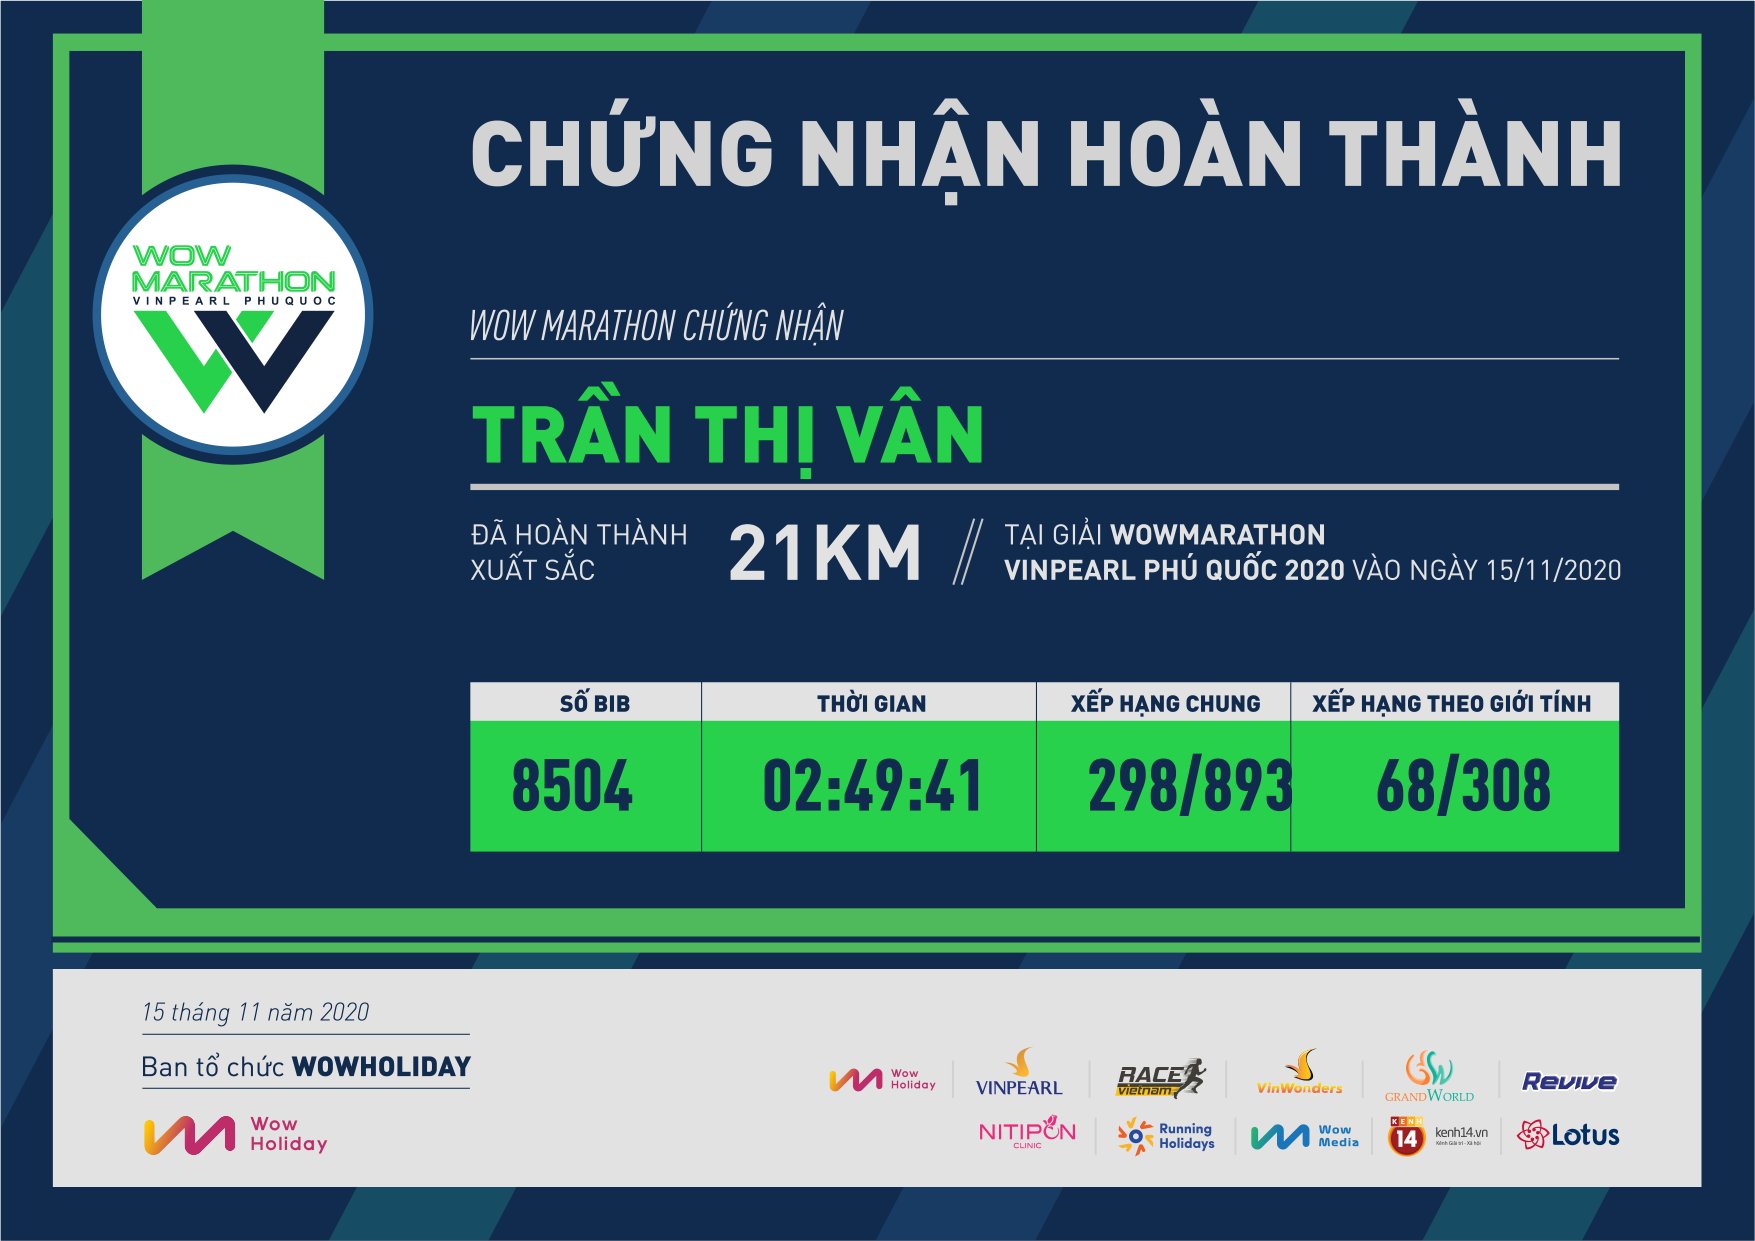 8504 - Trần Thị Vân